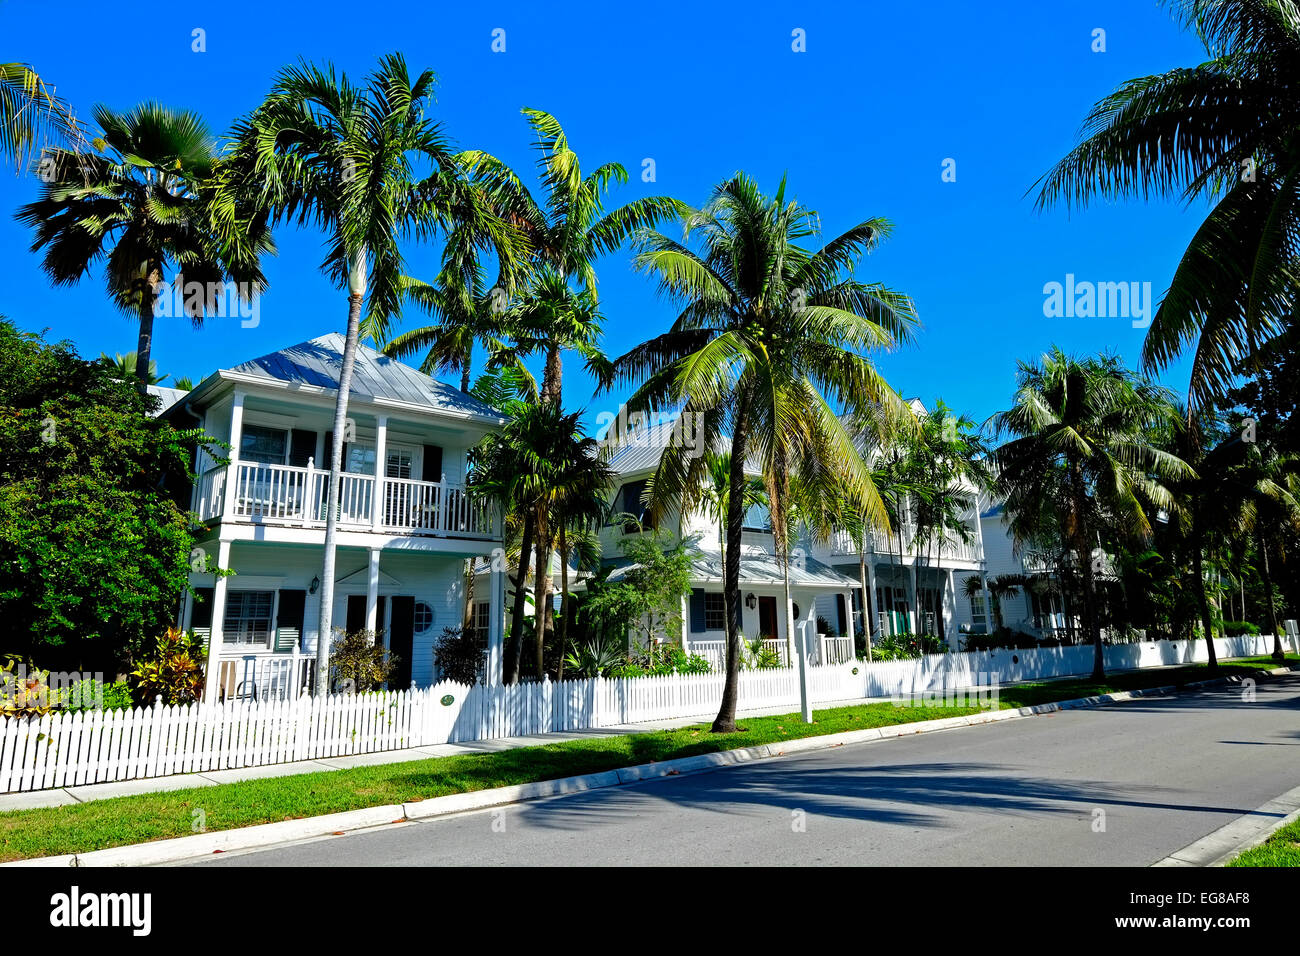 Key West FL Floride destination pour l'ouest de Tampa Crusie Caraïbes Banque D'Images